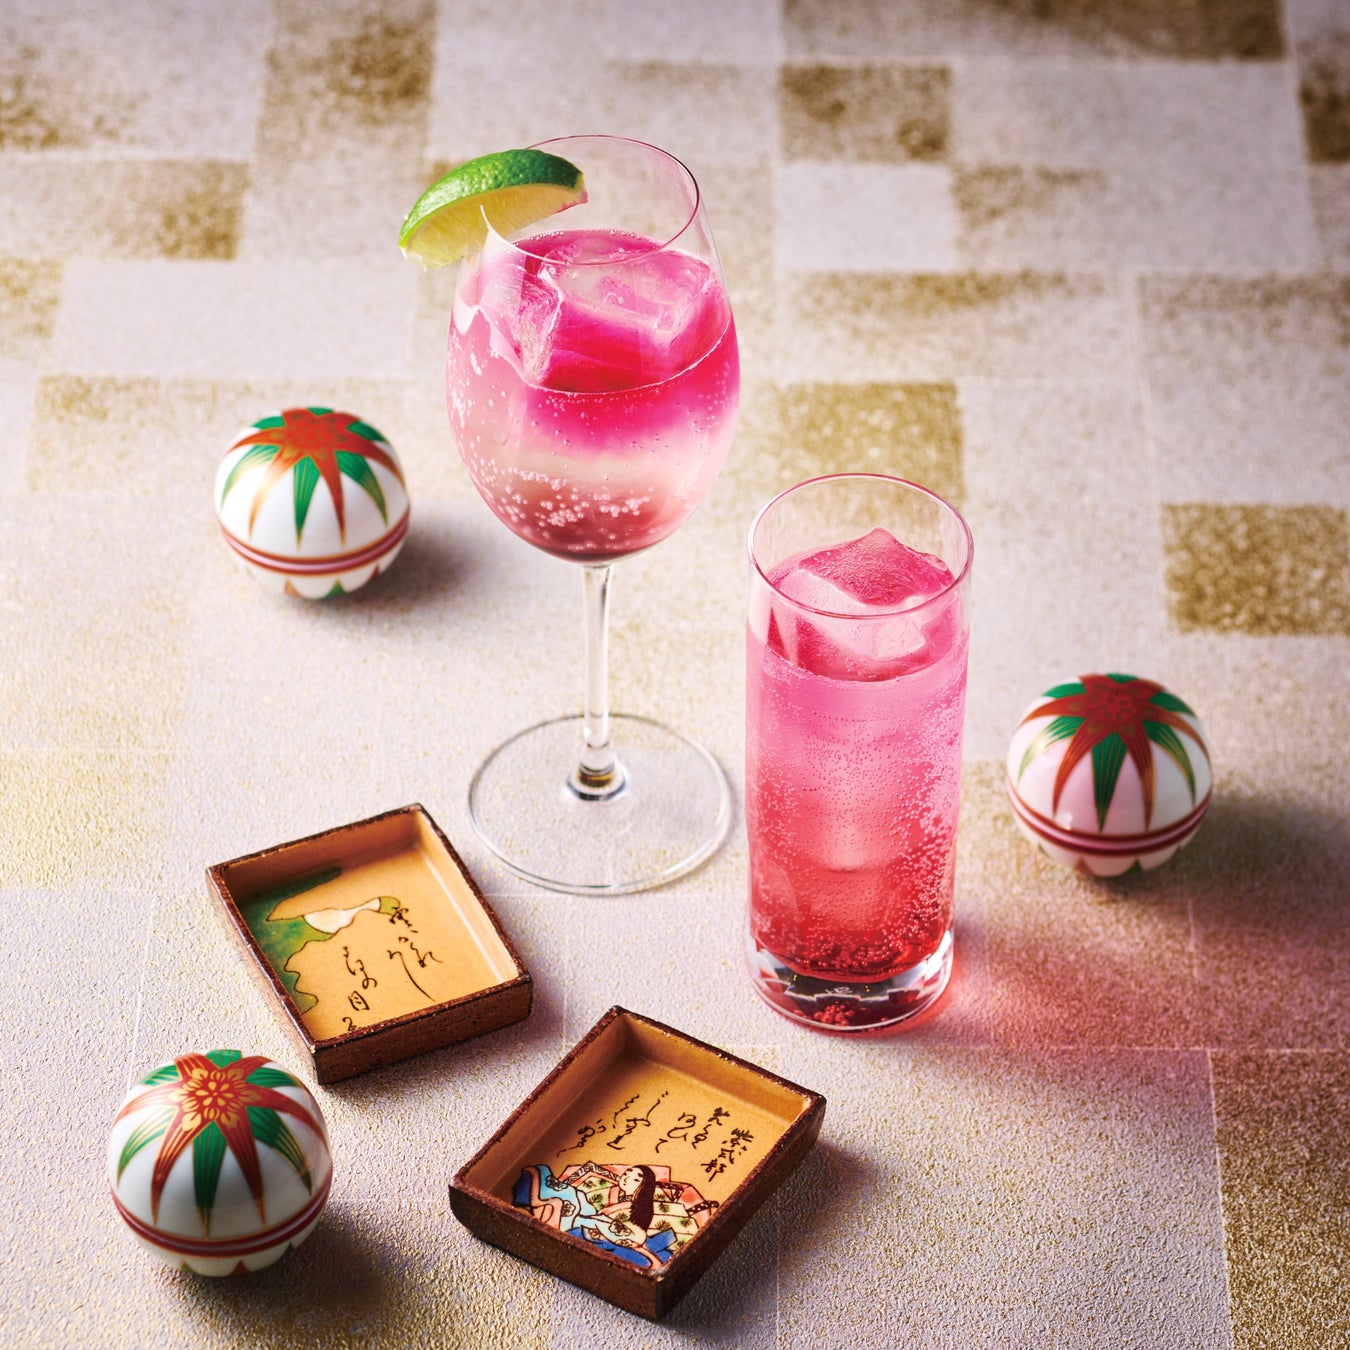 【仙台ロイヤルパークホテル】苺の華やかな色合いと甘い香りに心もはずむ、ストロベリーフェスティバル開催